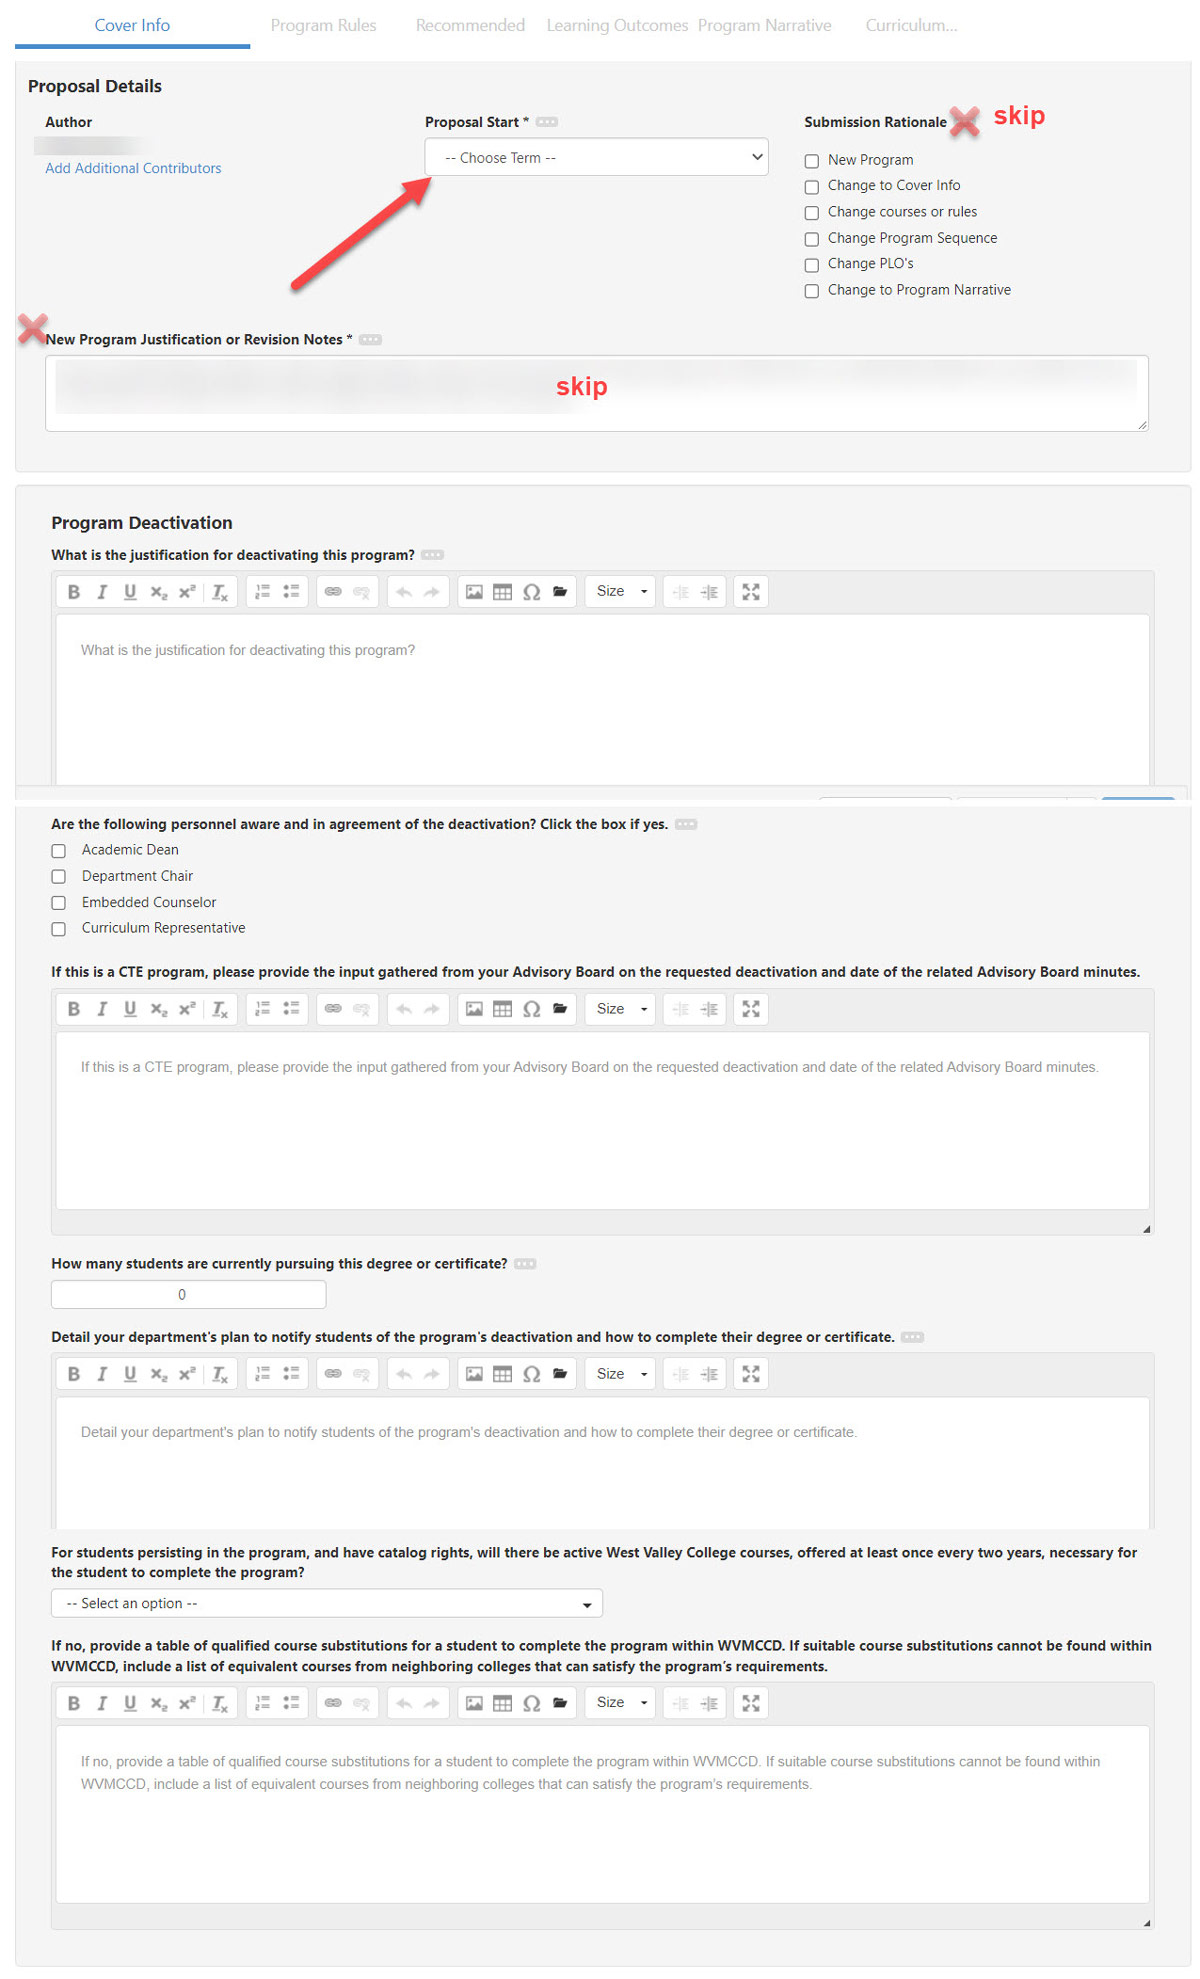 Screenshot of deactivation question in eLumen